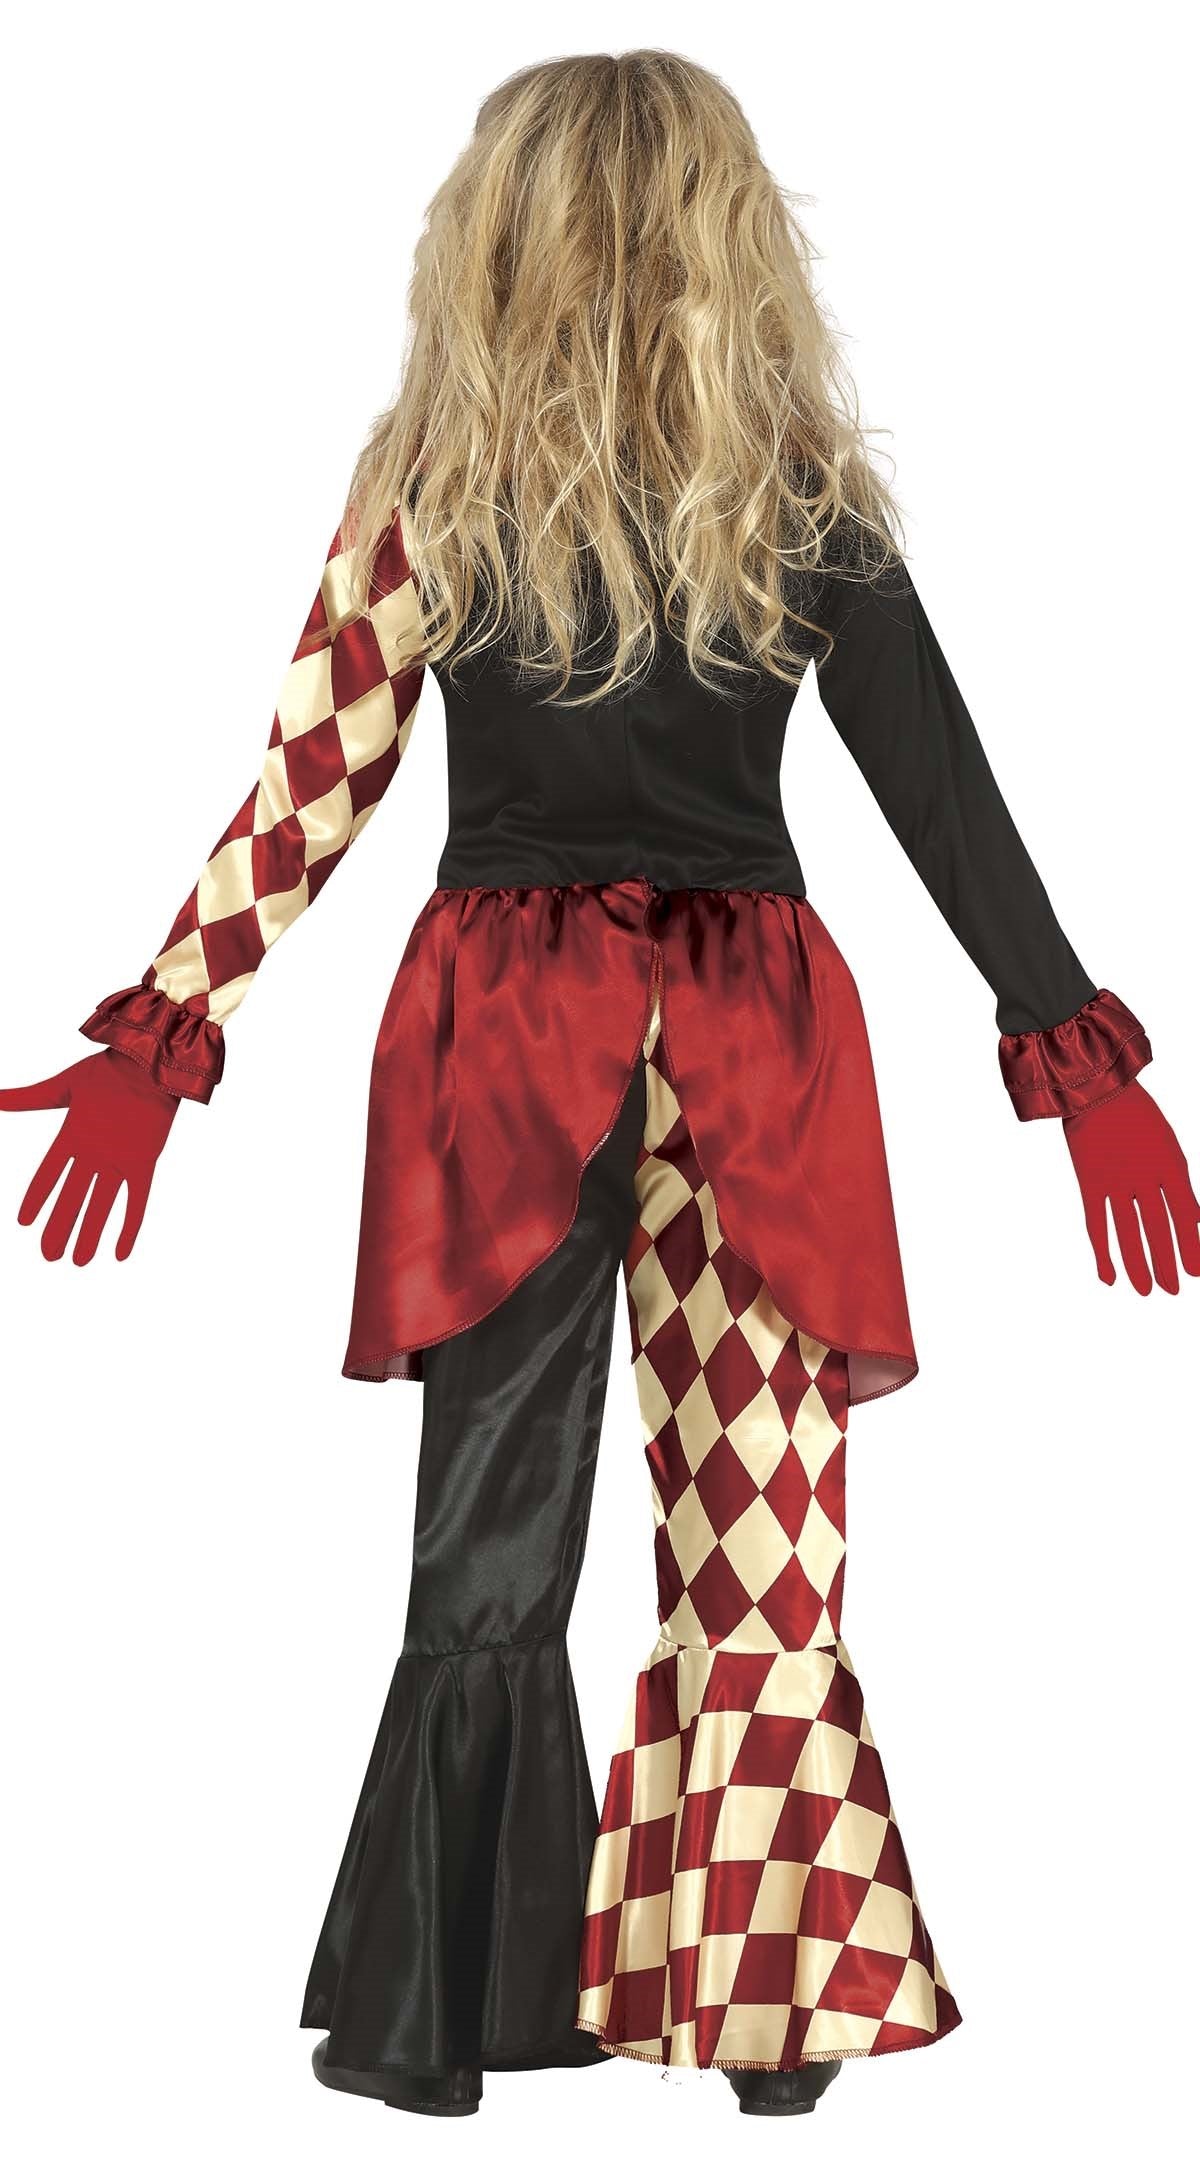 Horror Clown Costume Girls back